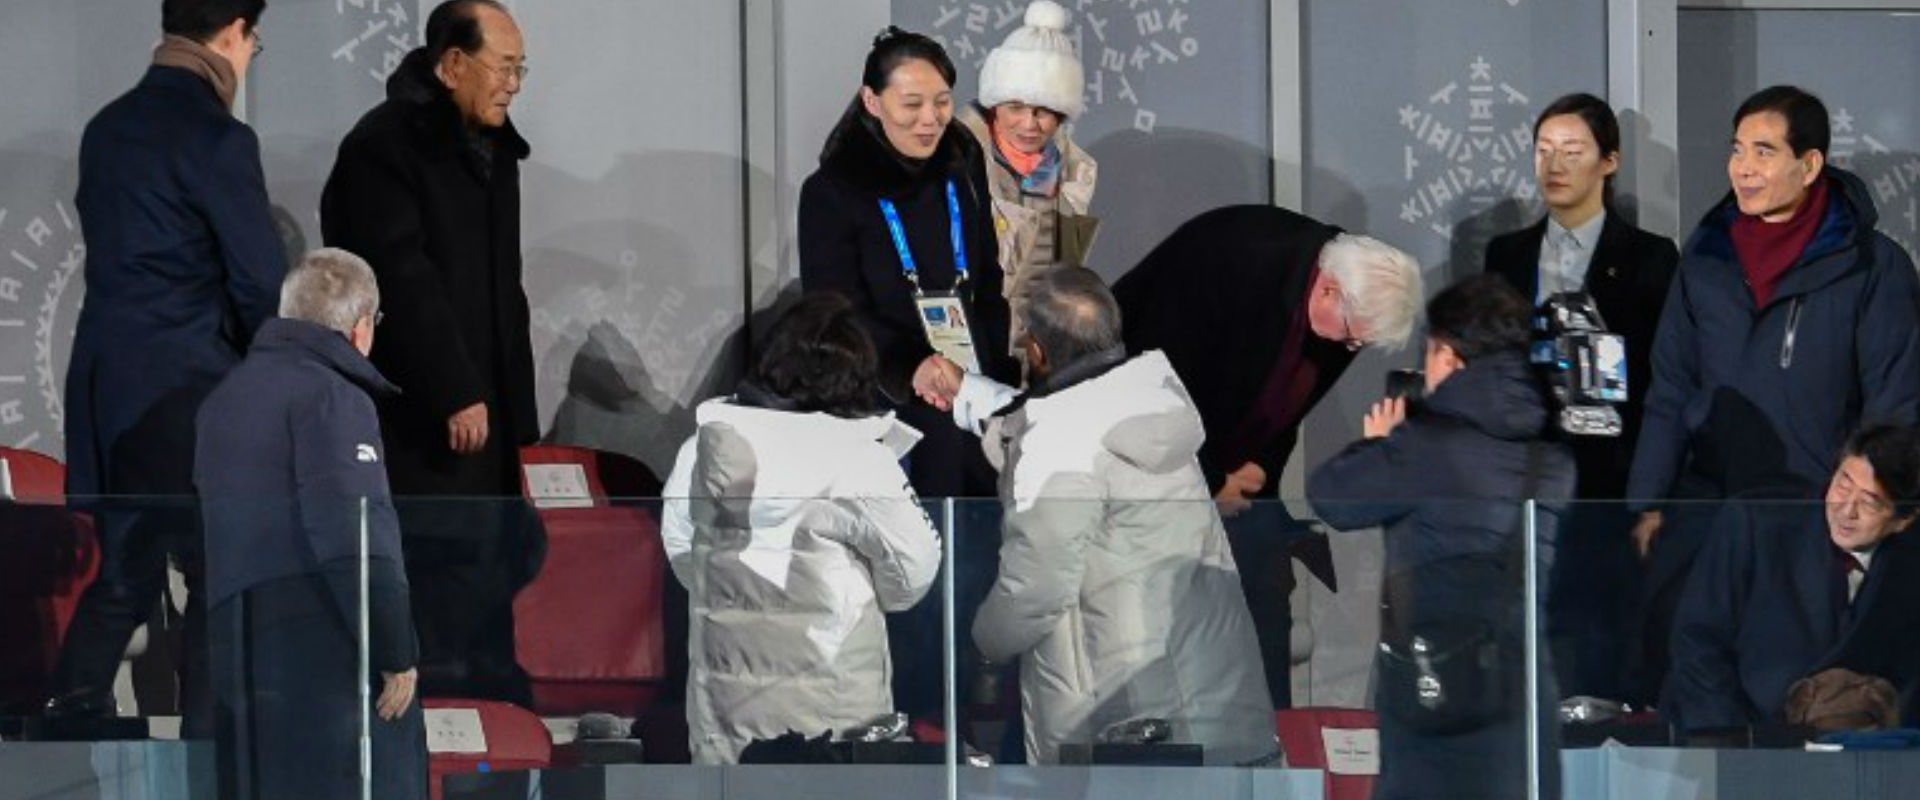 לחיצת היד בטקס הפתיחה של אולימפיאדת החורף